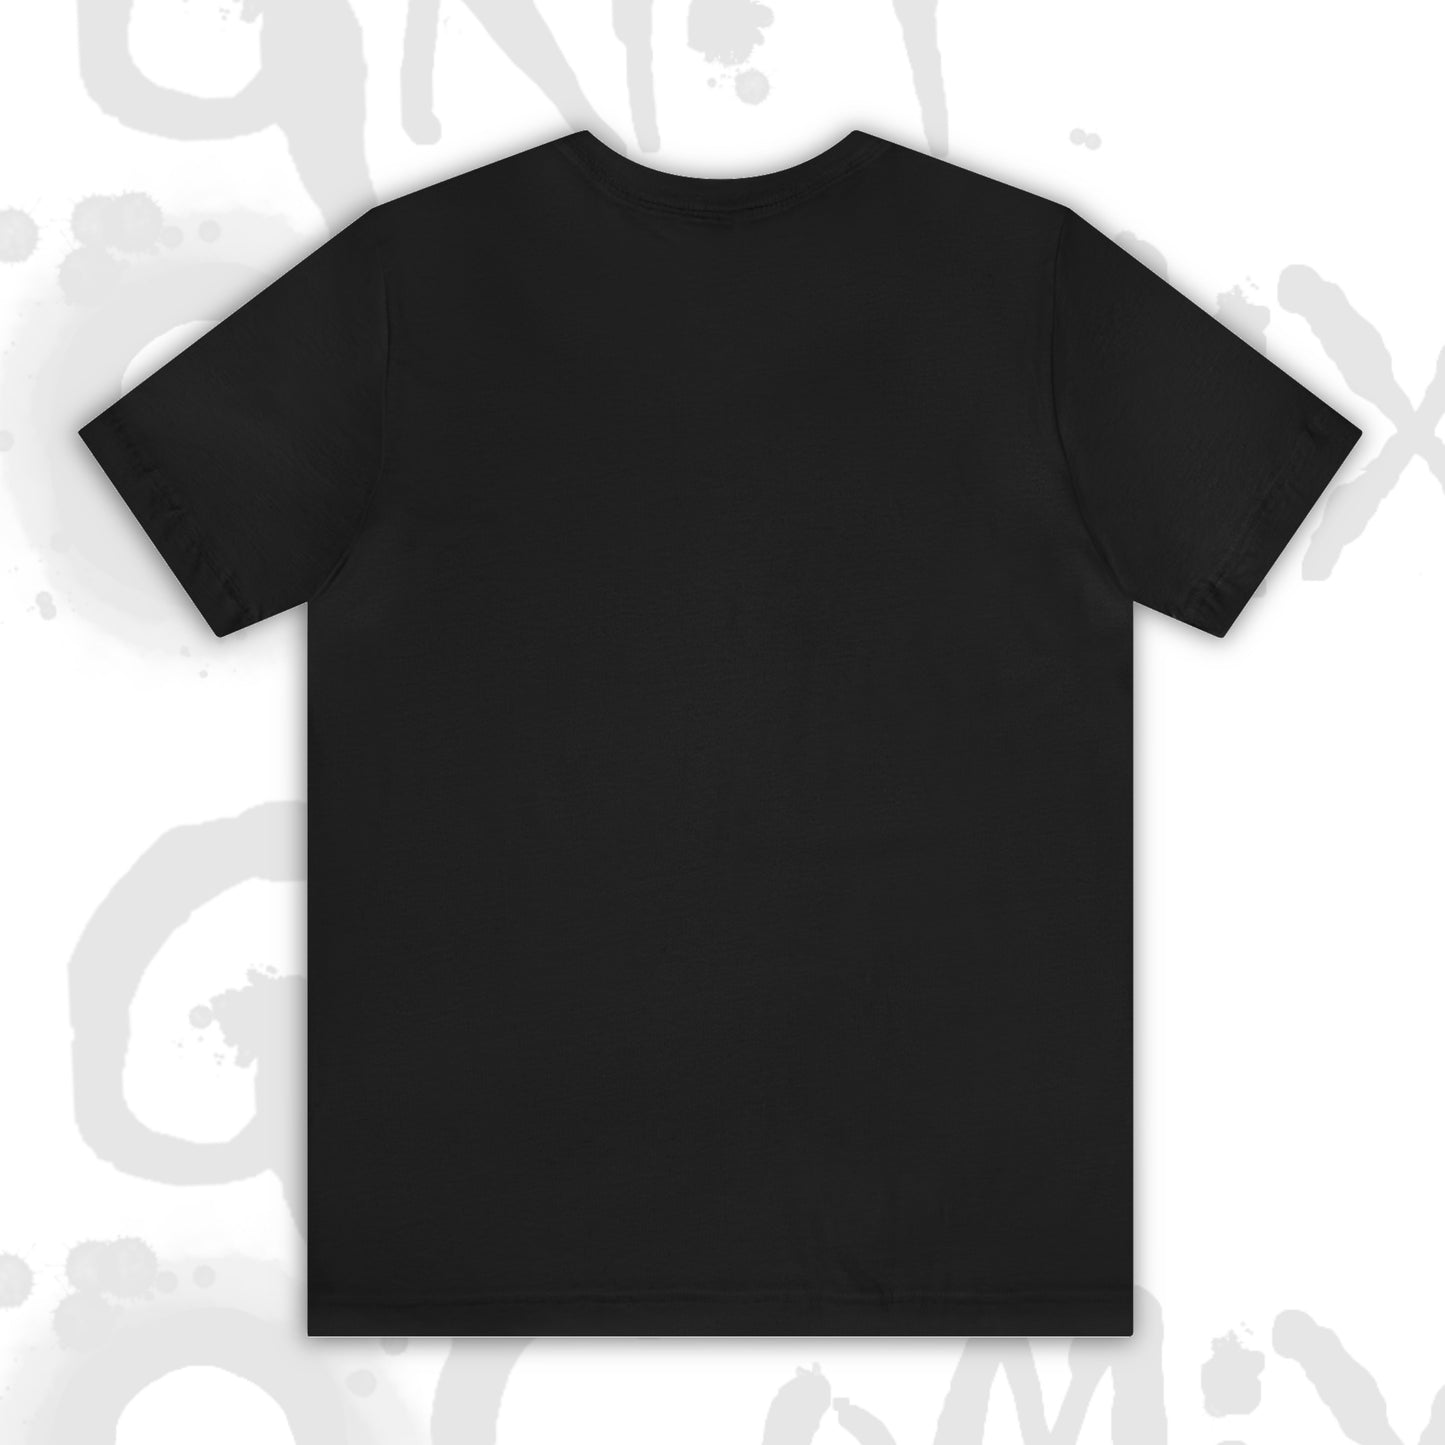 GCX Logo T-Shirt